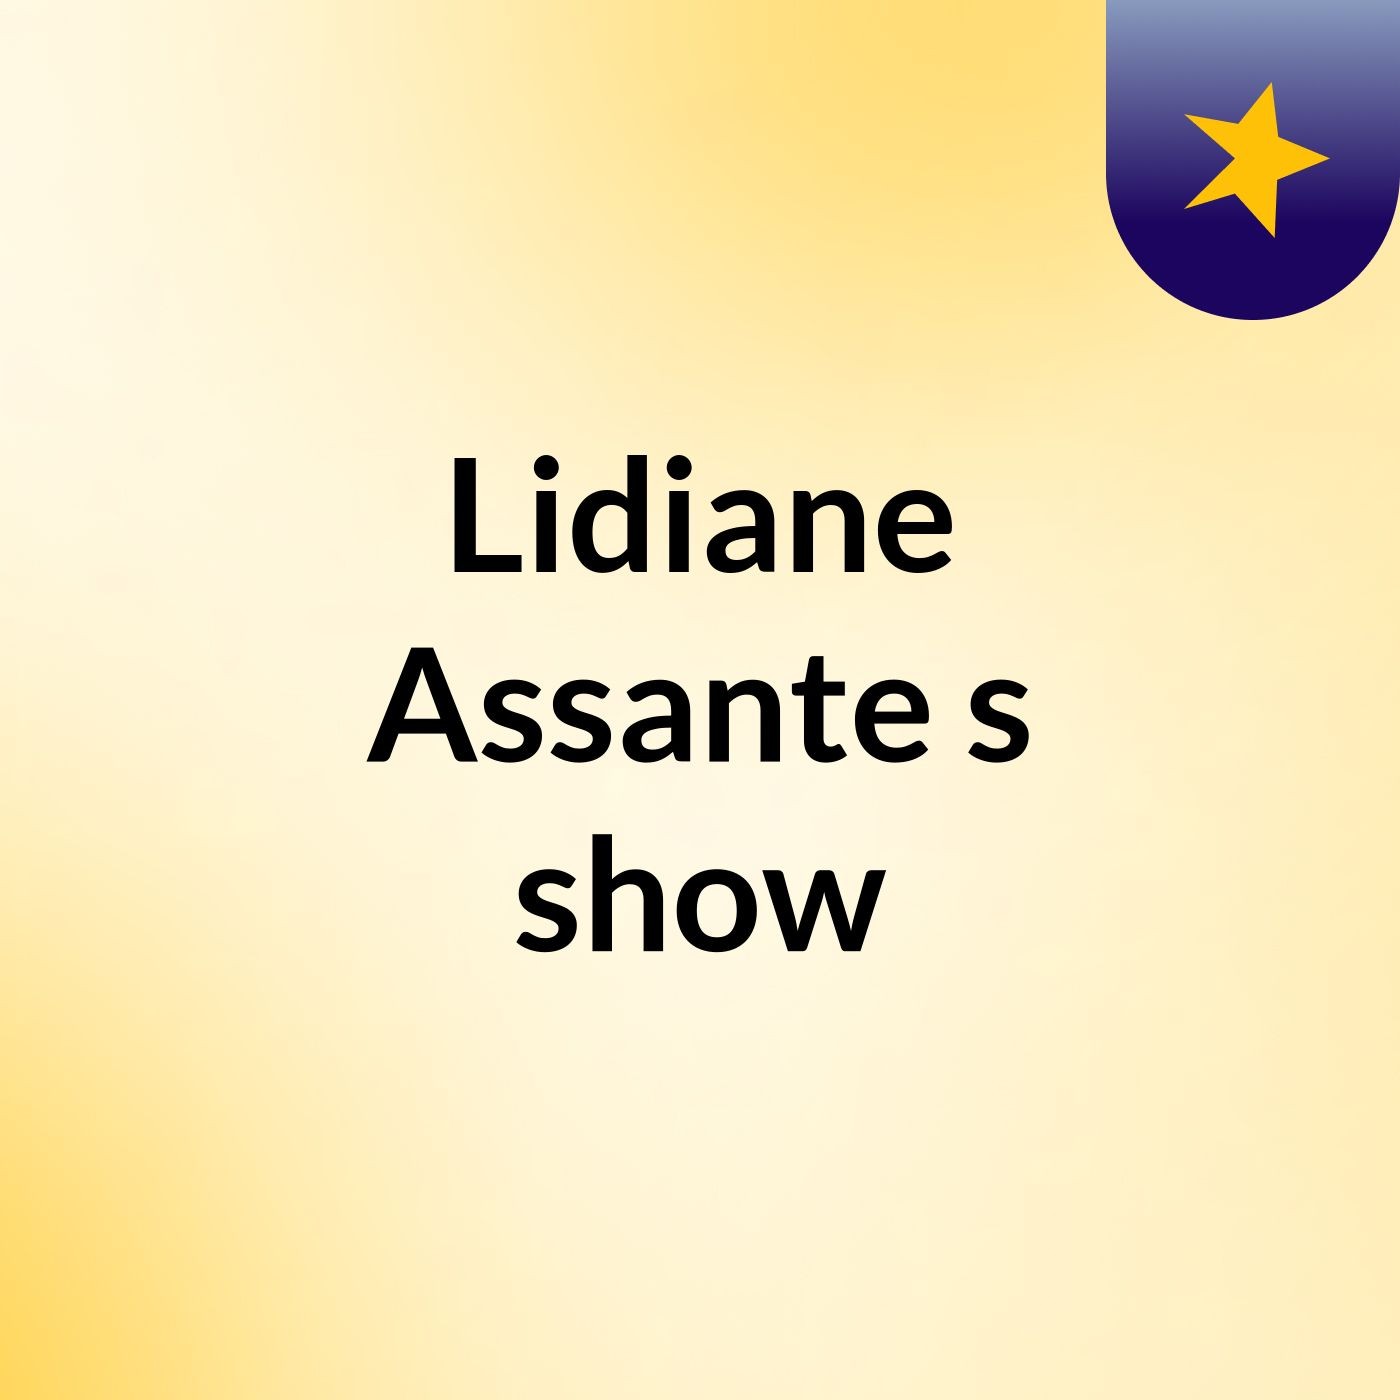 Lidiane Assante's show